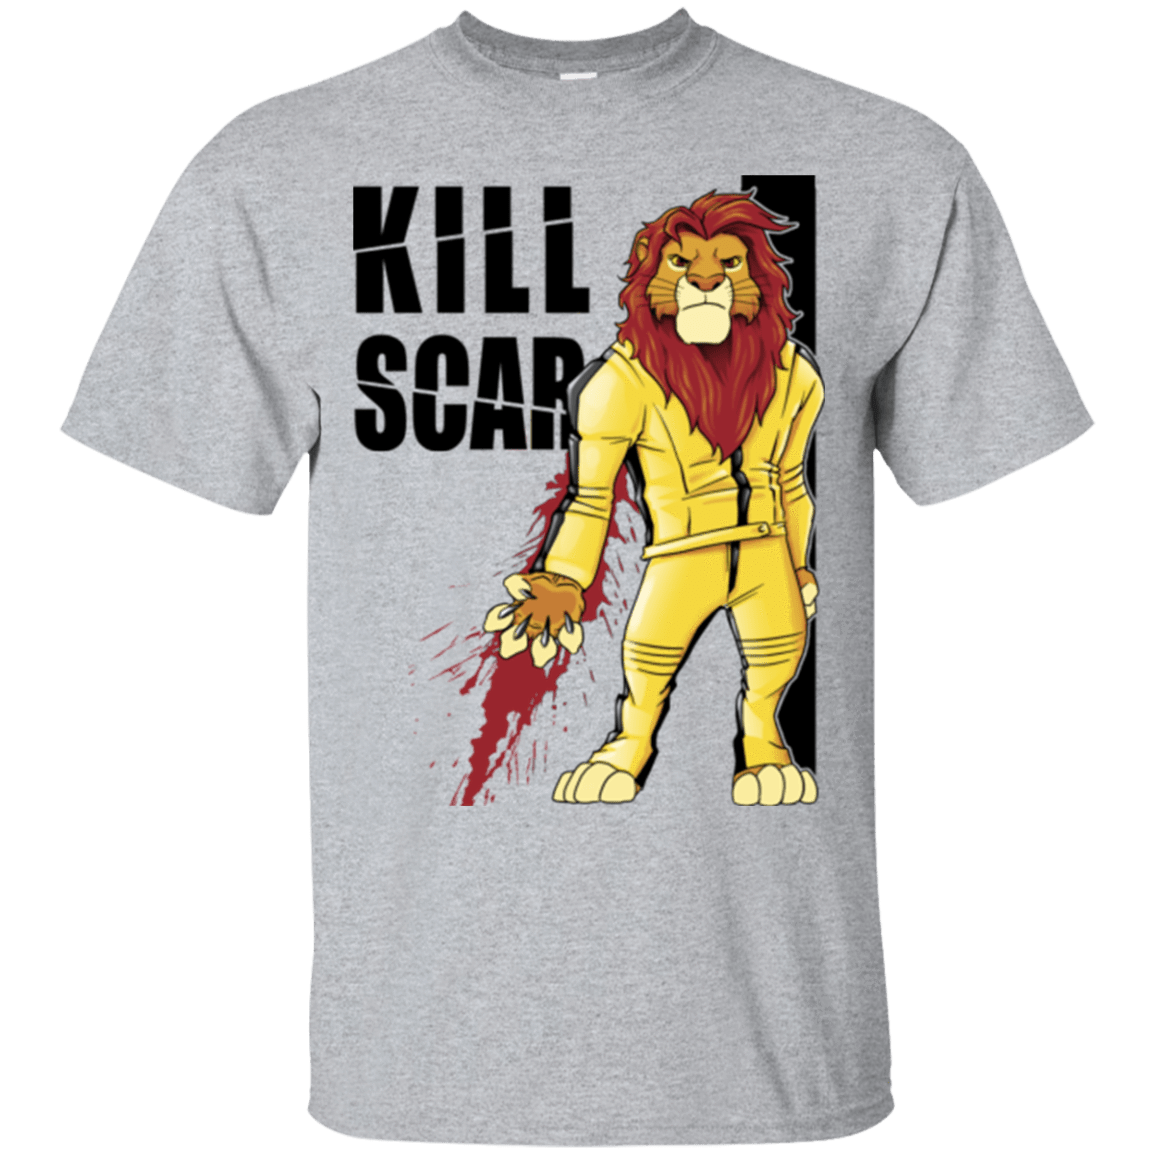 T-Shirts Sport Grey / Small Kill Scar T-Shirt